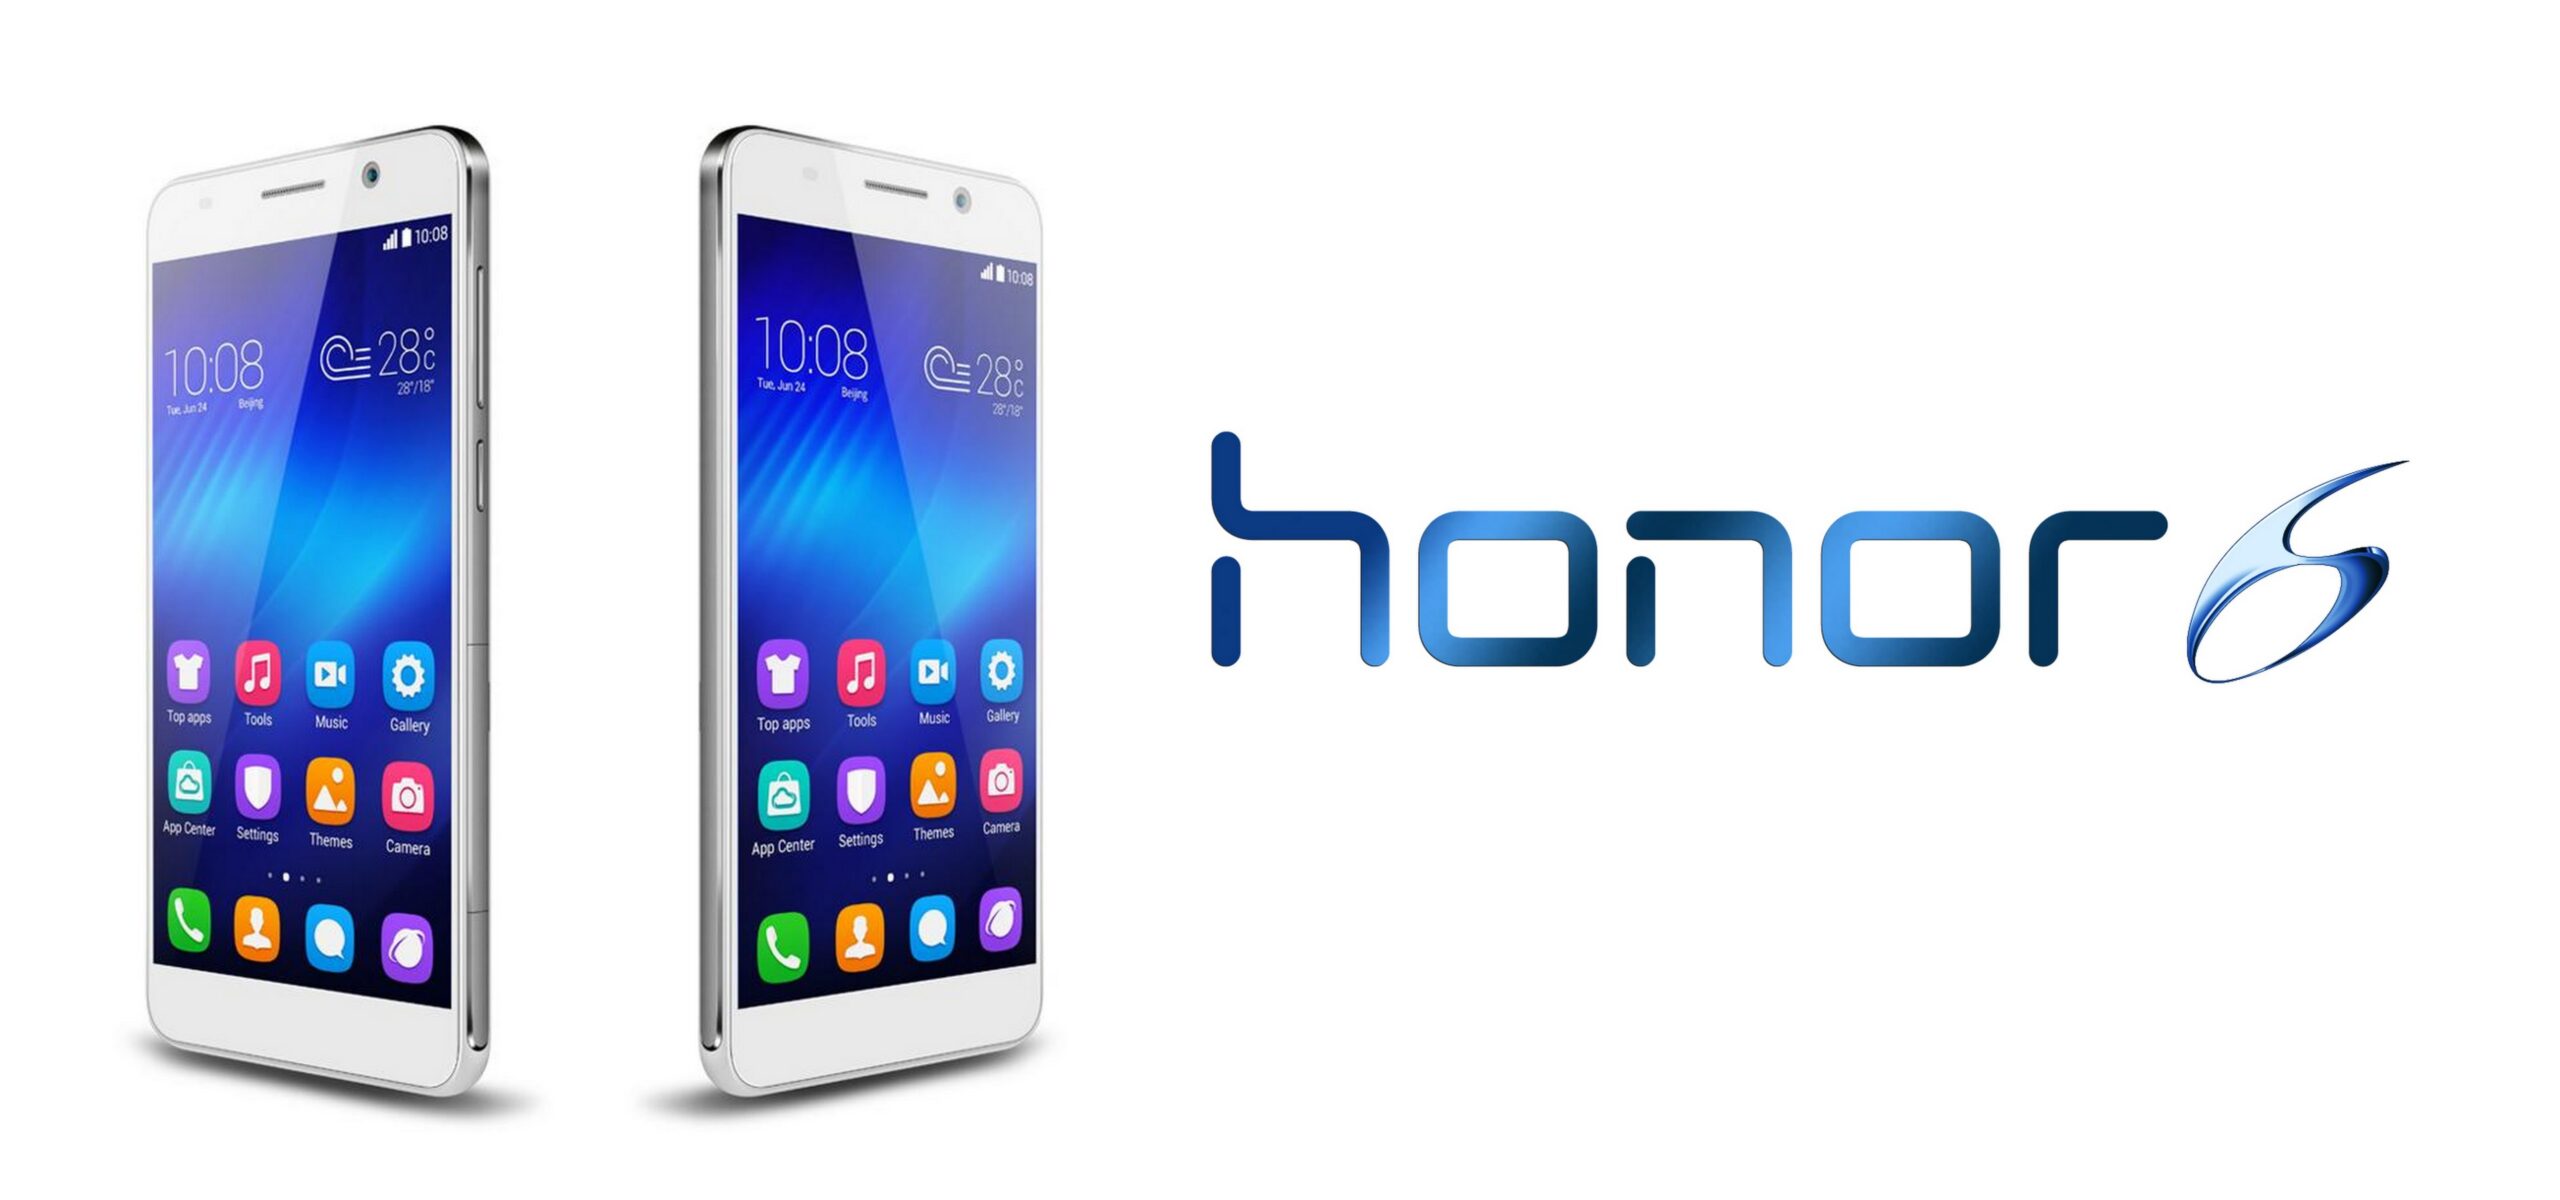 Nowa marka telefonów wkracza na polski rynek Mobile Mediarun Com Honor6 Smartfon scaled